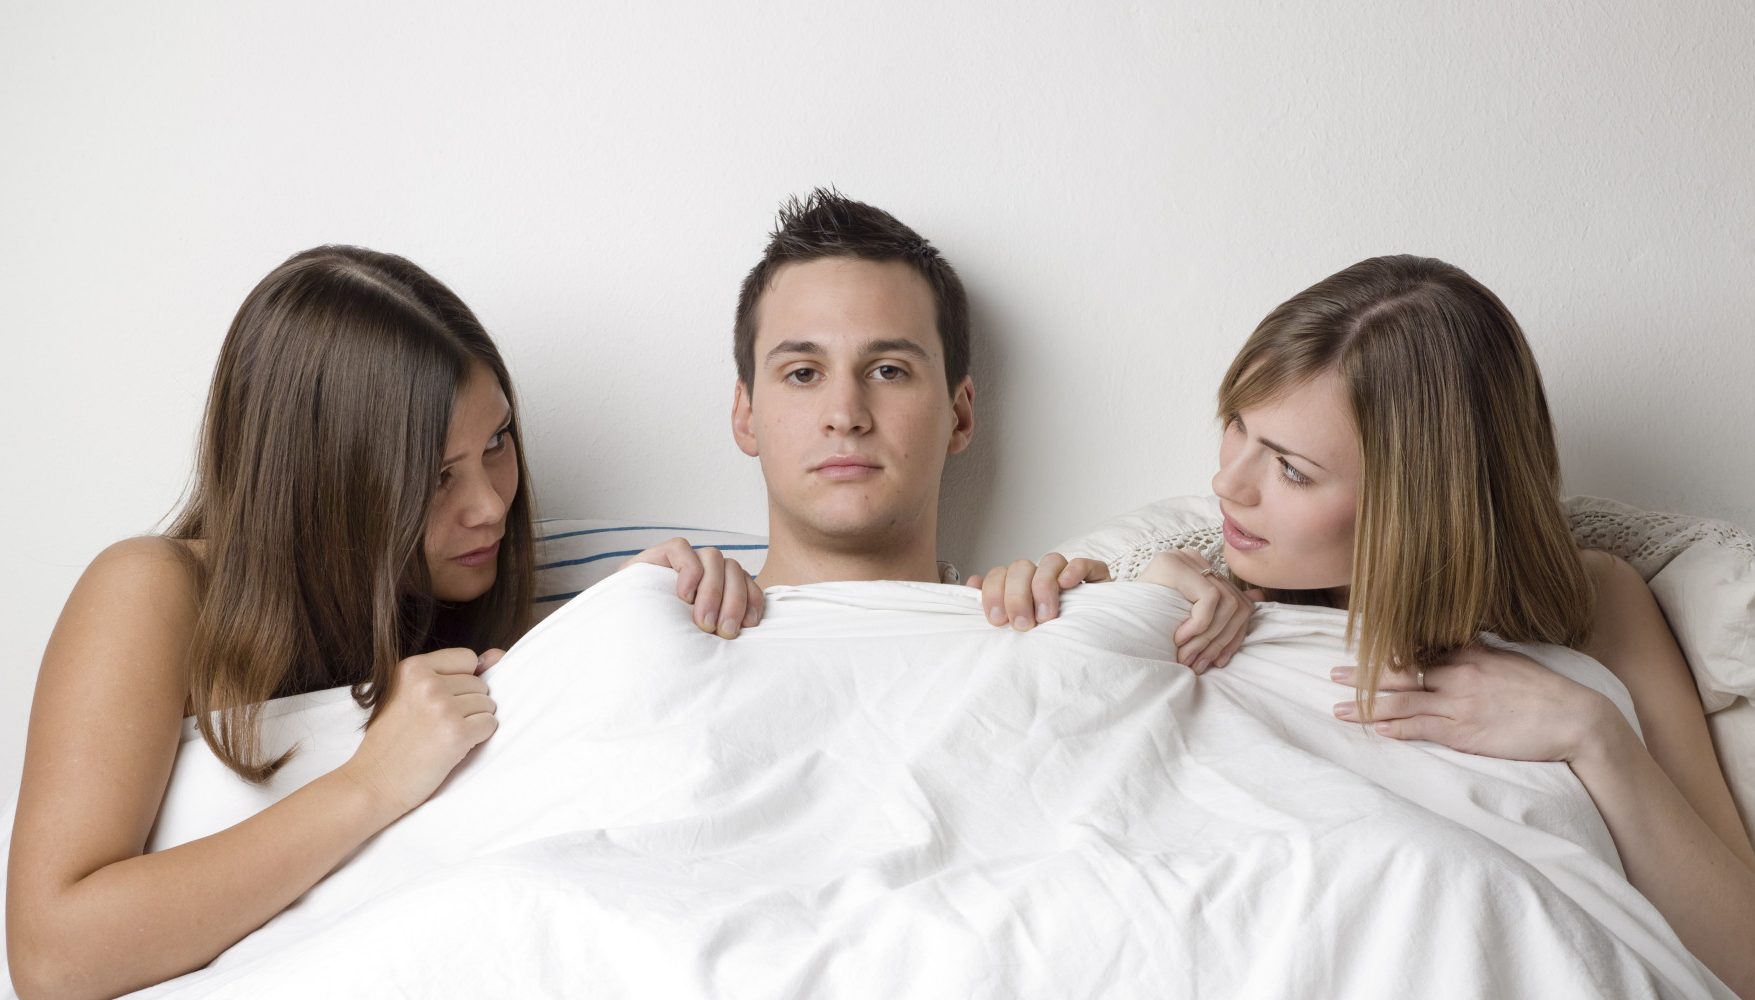 Две девушки и один парень решили устроить в спальне анальный секс втроем